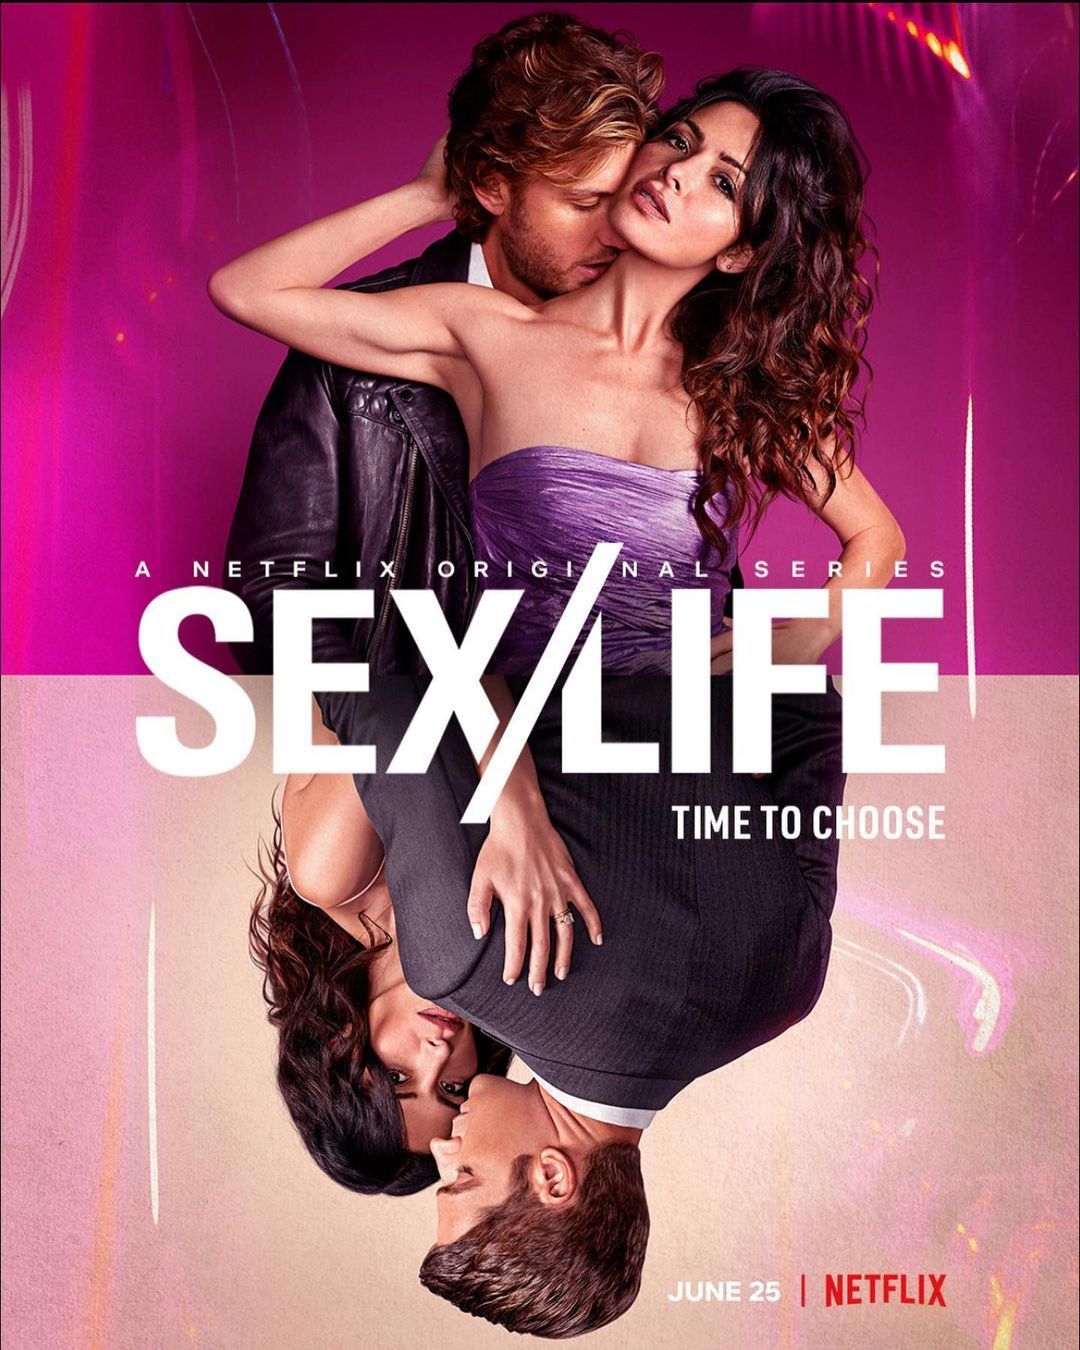 去年 6 月，Netflix 改編自 B.B Easton 的半自傳小說《性生活》，講述社會道德界線下做出越矩之事的前因後果，並於追逐某種程度上的「性解放」隔外令人浮想聯翩。值得一提的是，女主角 Sarah Shahi 飾演 Billie Connelly 與男主角 Adam Demos 飾演 Brad Simon，更在現實中意外動了真情讓該部作品討論度錦上添花。